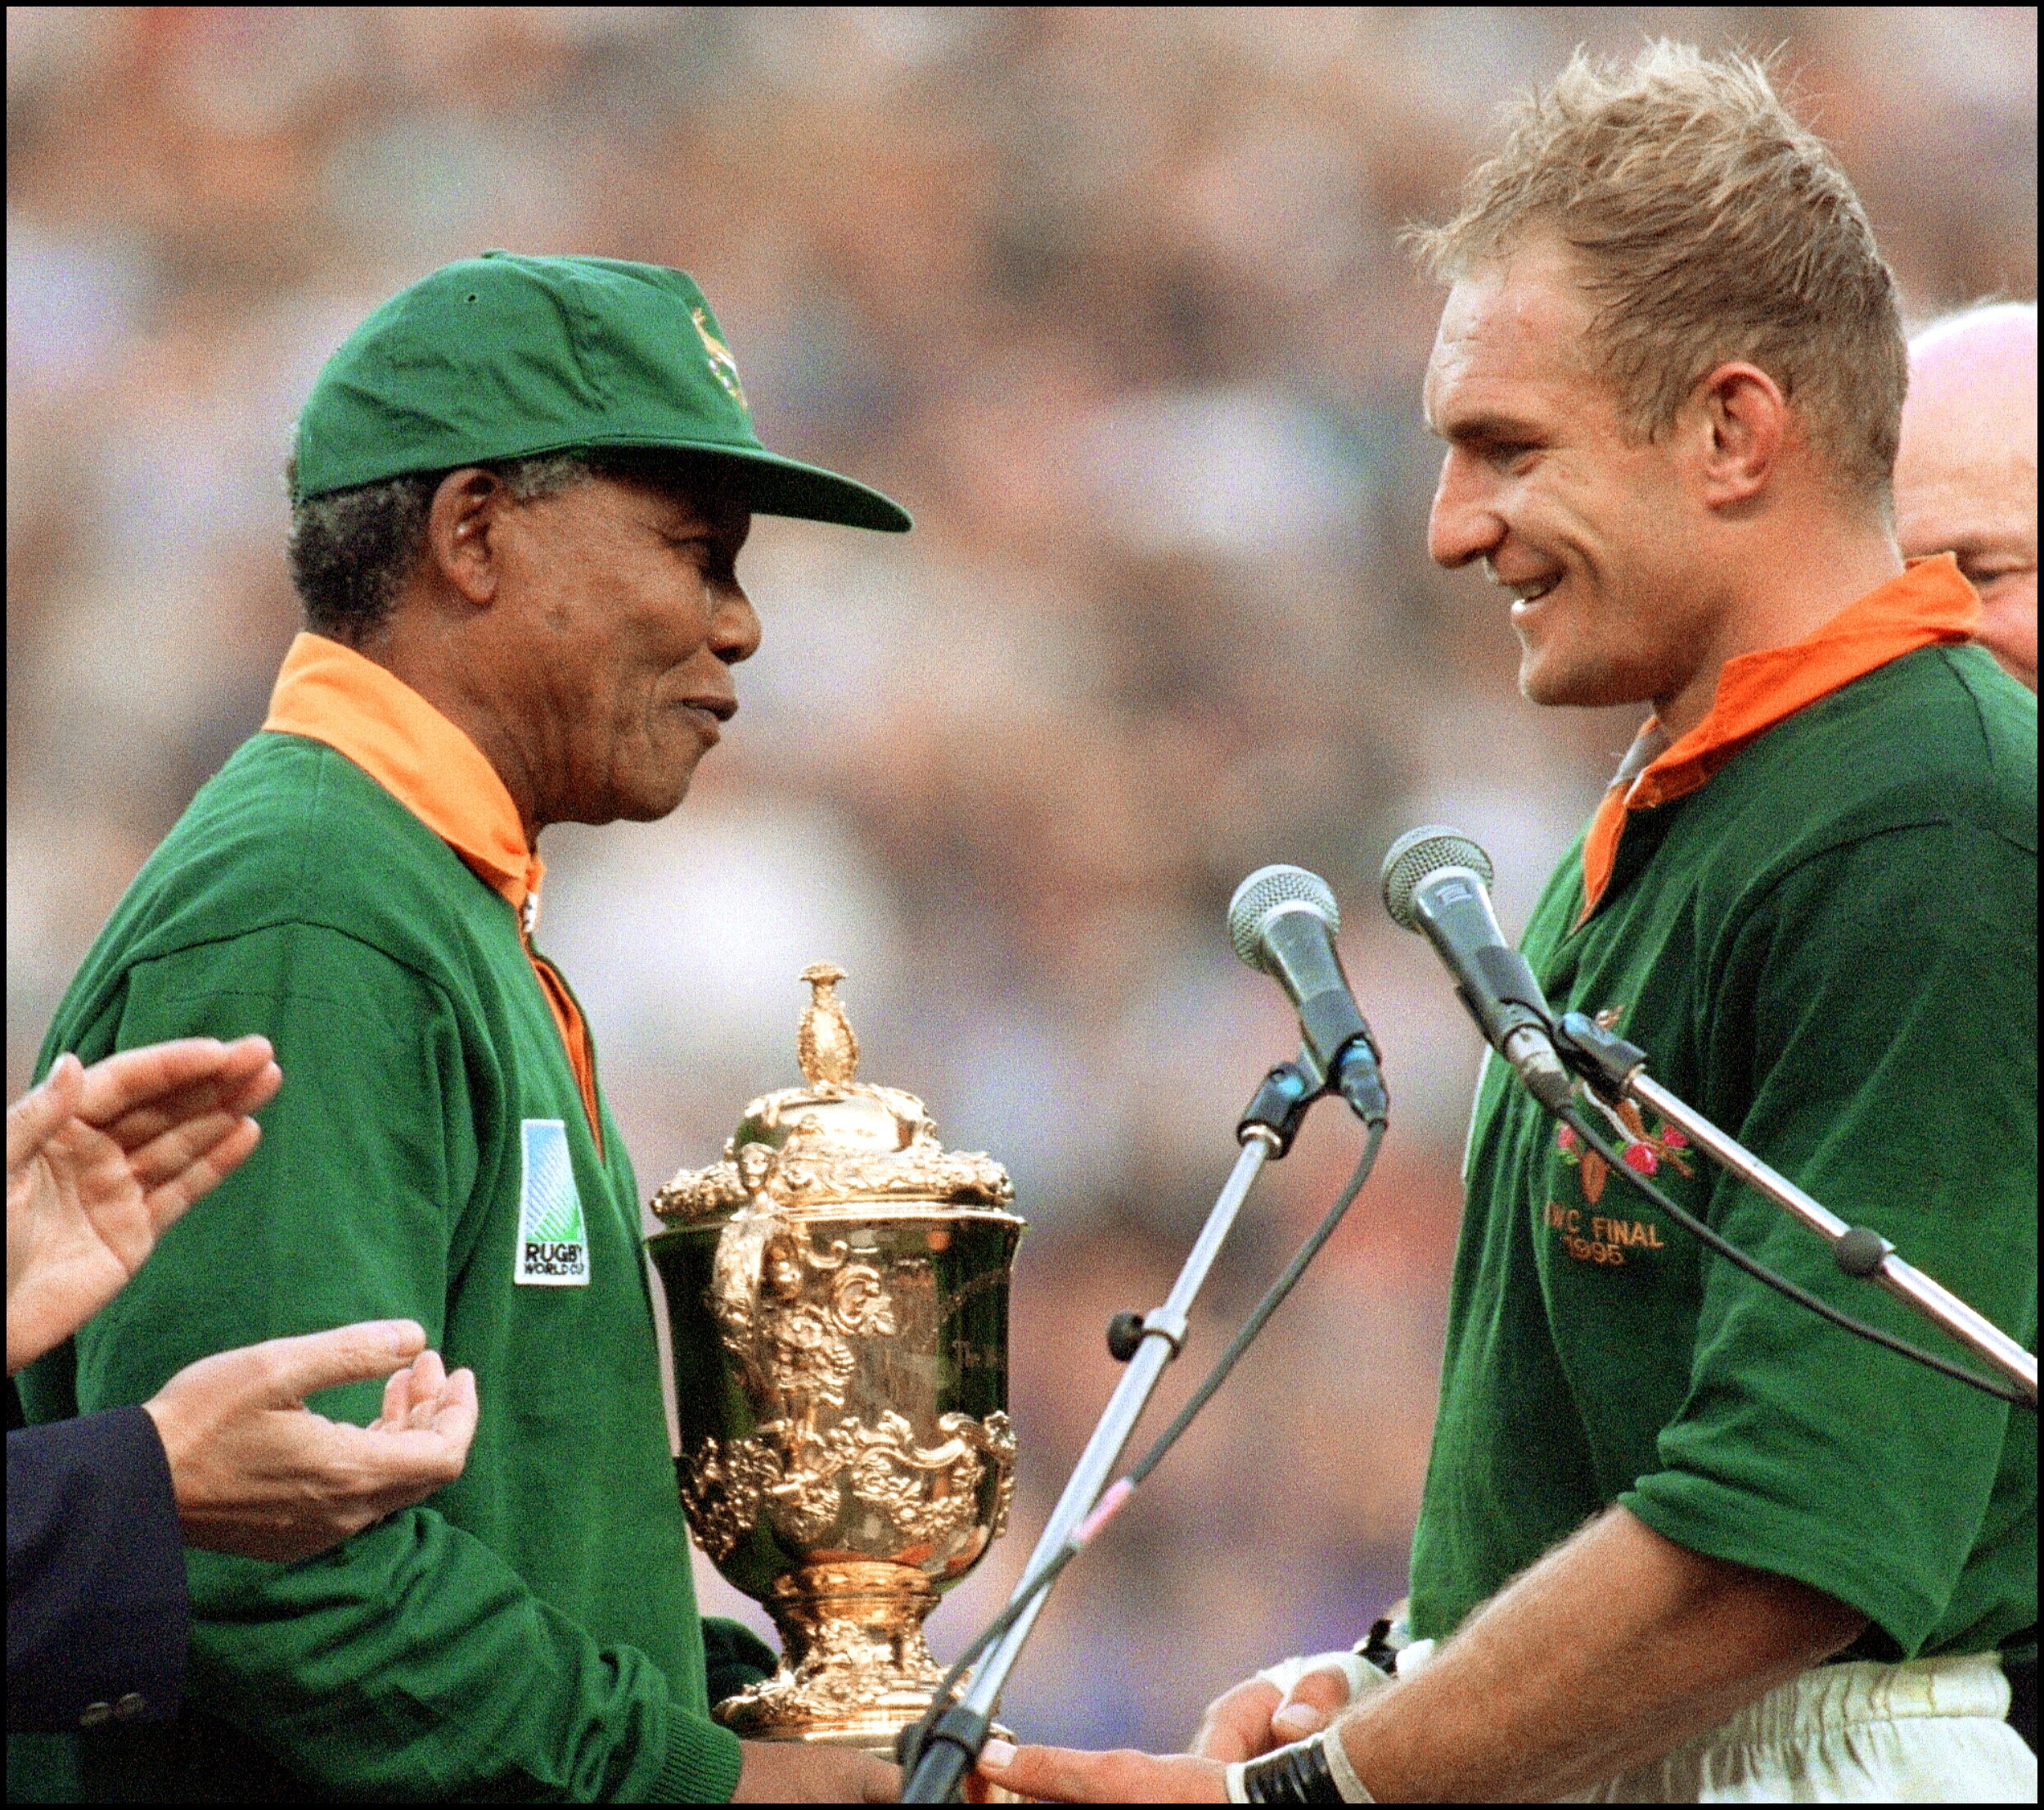 Il presidente del Sudafrica si congratula con il capitano della nazionale di rugby sudafricana François Pienaar dopo la vittoria nella finale della Coppa del mondo di rugby a Ellis Park a Johannesburg il 24 giugno 1995. Un evento fortemente voluto da Mandela nel suo paese, per fortificare il processo di riunificazione nazionale